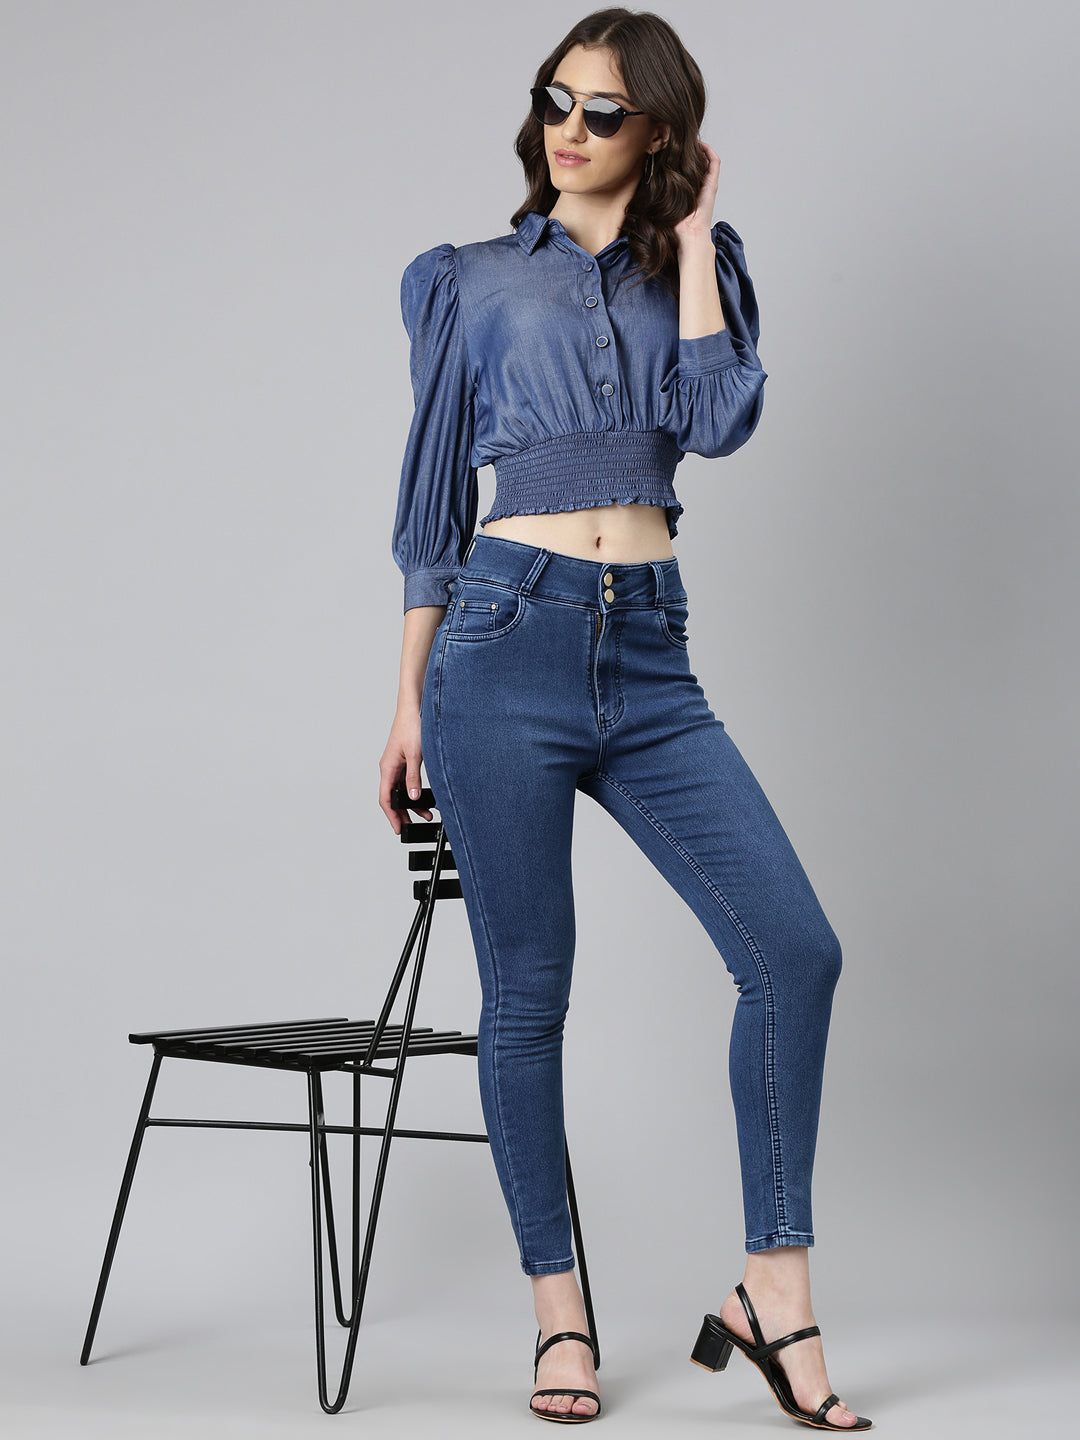 Women Navy Blue Solid Shirt StyleCrop Top